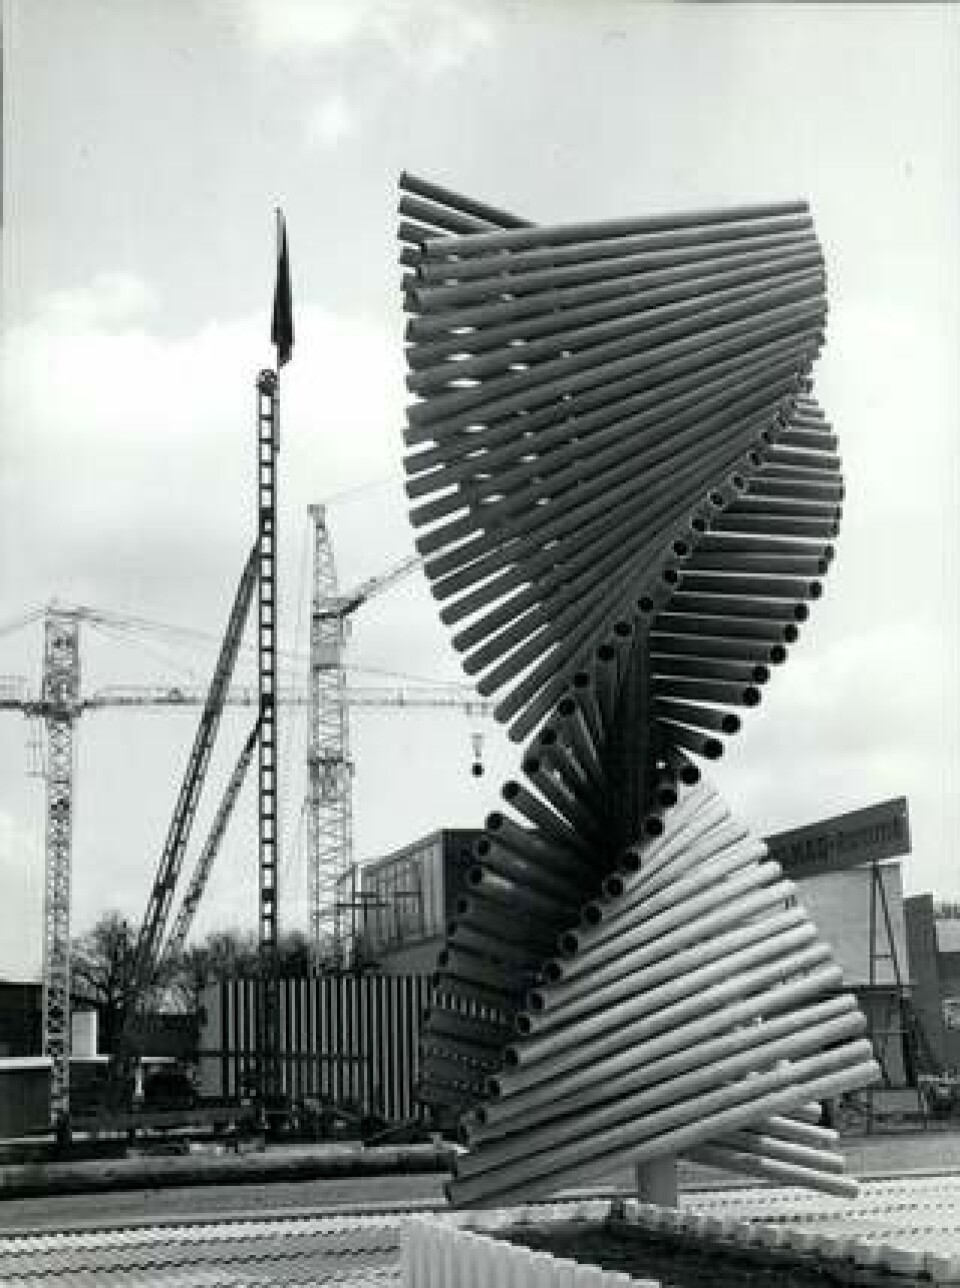 1957 prydde detta konstverk av eternit-rör en industriutställning i Tyskland. Foto: Keystone / Zuma / IBL Bildbyrå